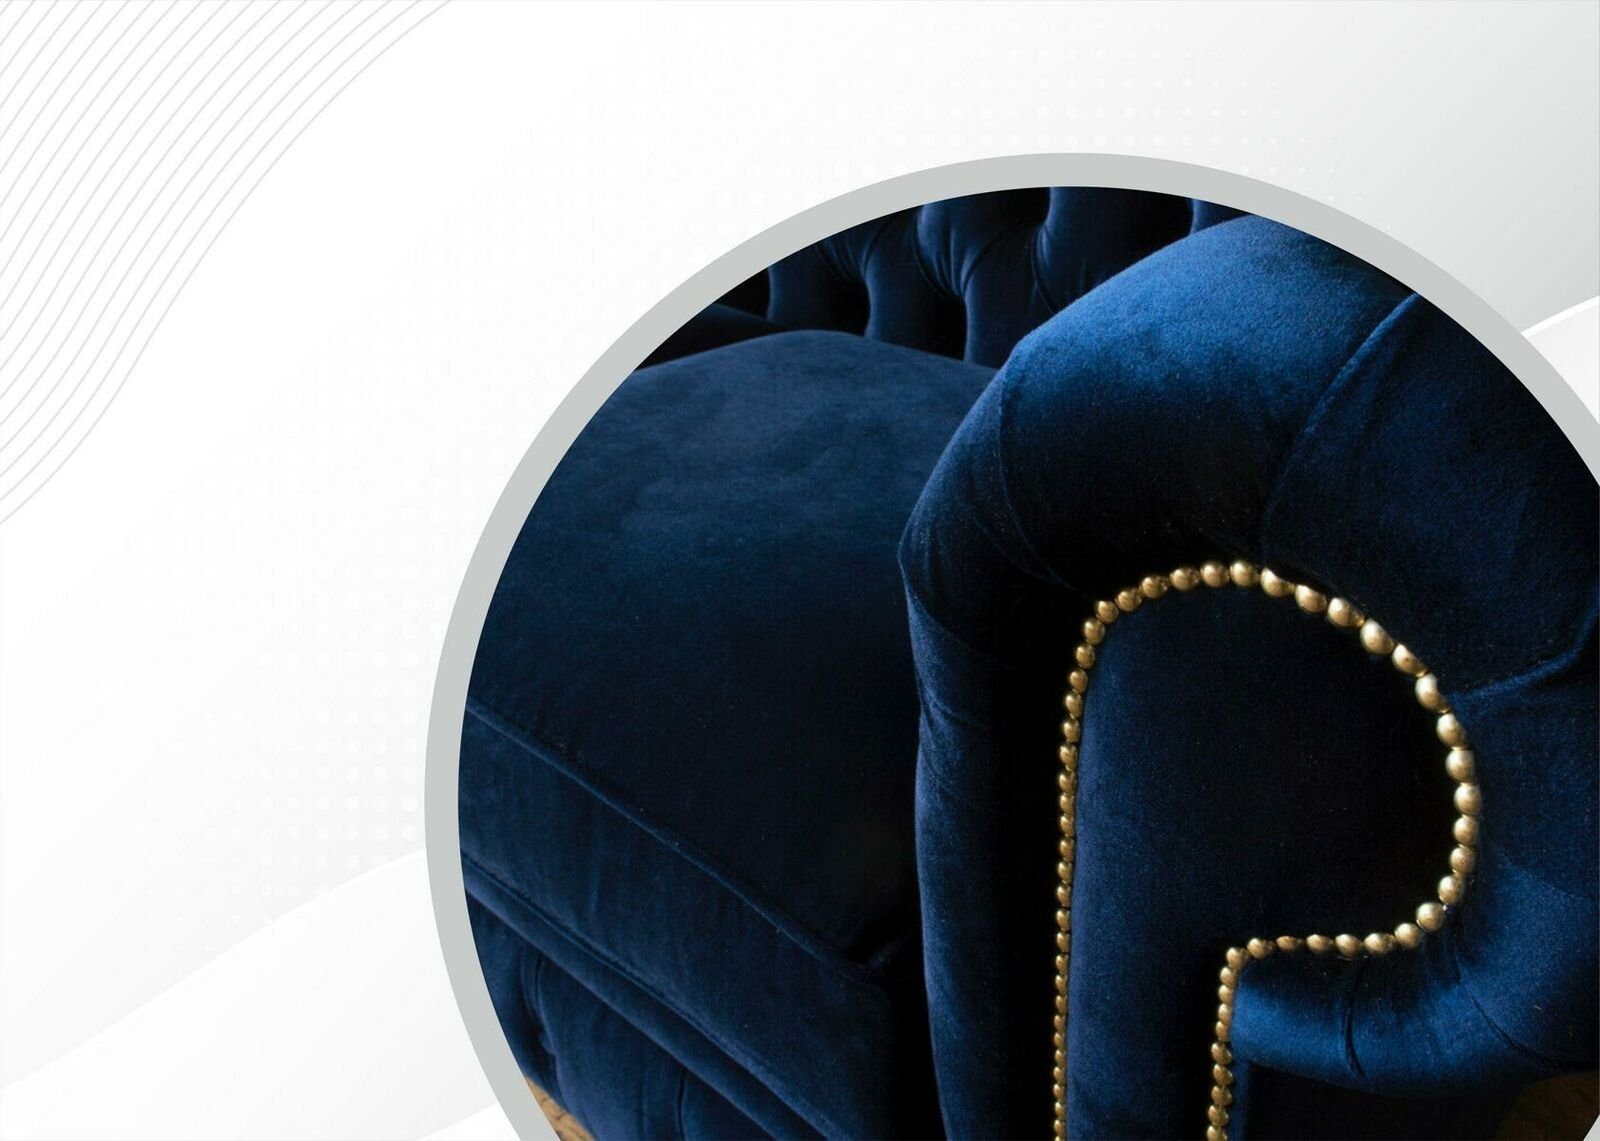 Blaue Möbel Chesterfield Chesterfield-Sofa, Wohnzimmer Sofa Couchen Modern Neu JVmoebel Samt Stoff Design